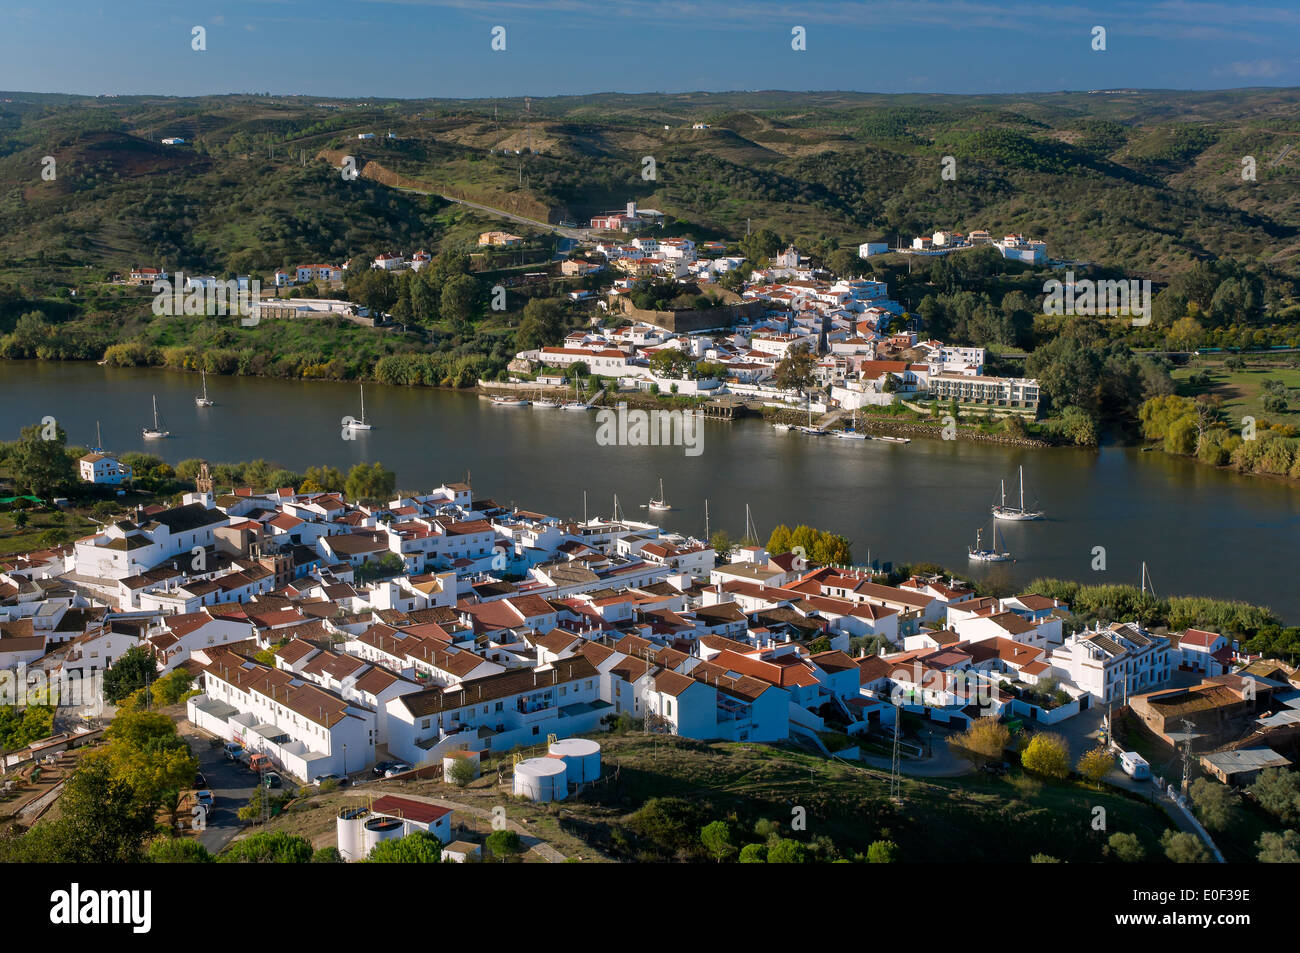 La rivière Guadiana, frontière hispano-portugaise, Sanlucar de Guadiana, à Huelva province, en Espagne, dans l'arrière-plan Alcoutim (Portugal) Banque D'Images